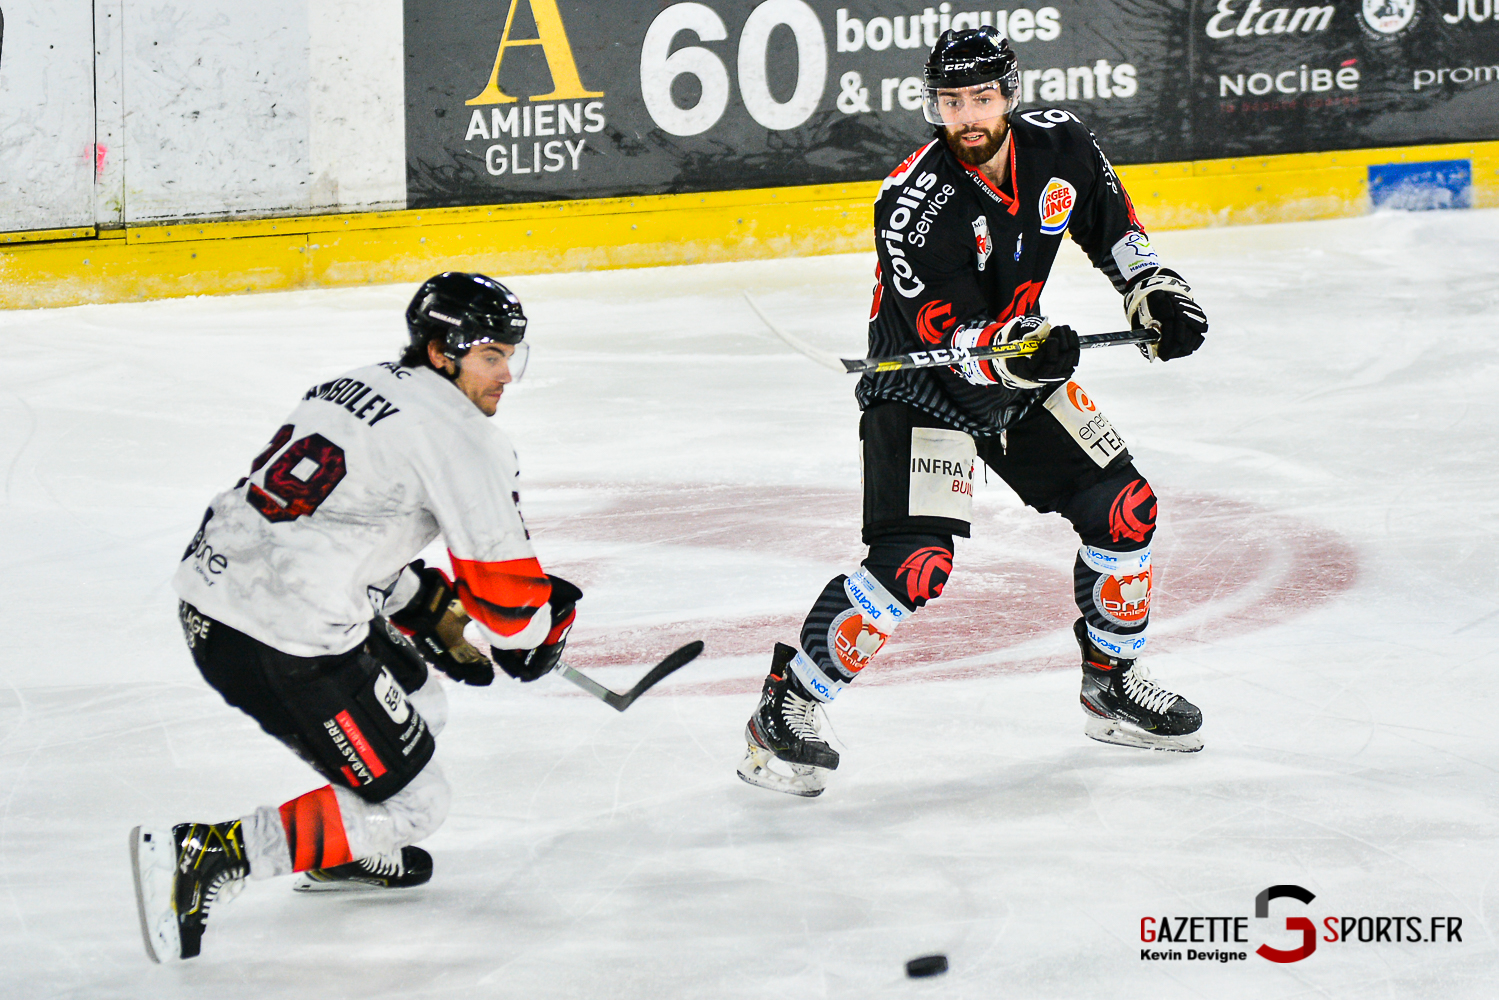 Hockey Sur Glace Amiens Vs Bordeaux J15 Kevin Devigne Gazettesports 58